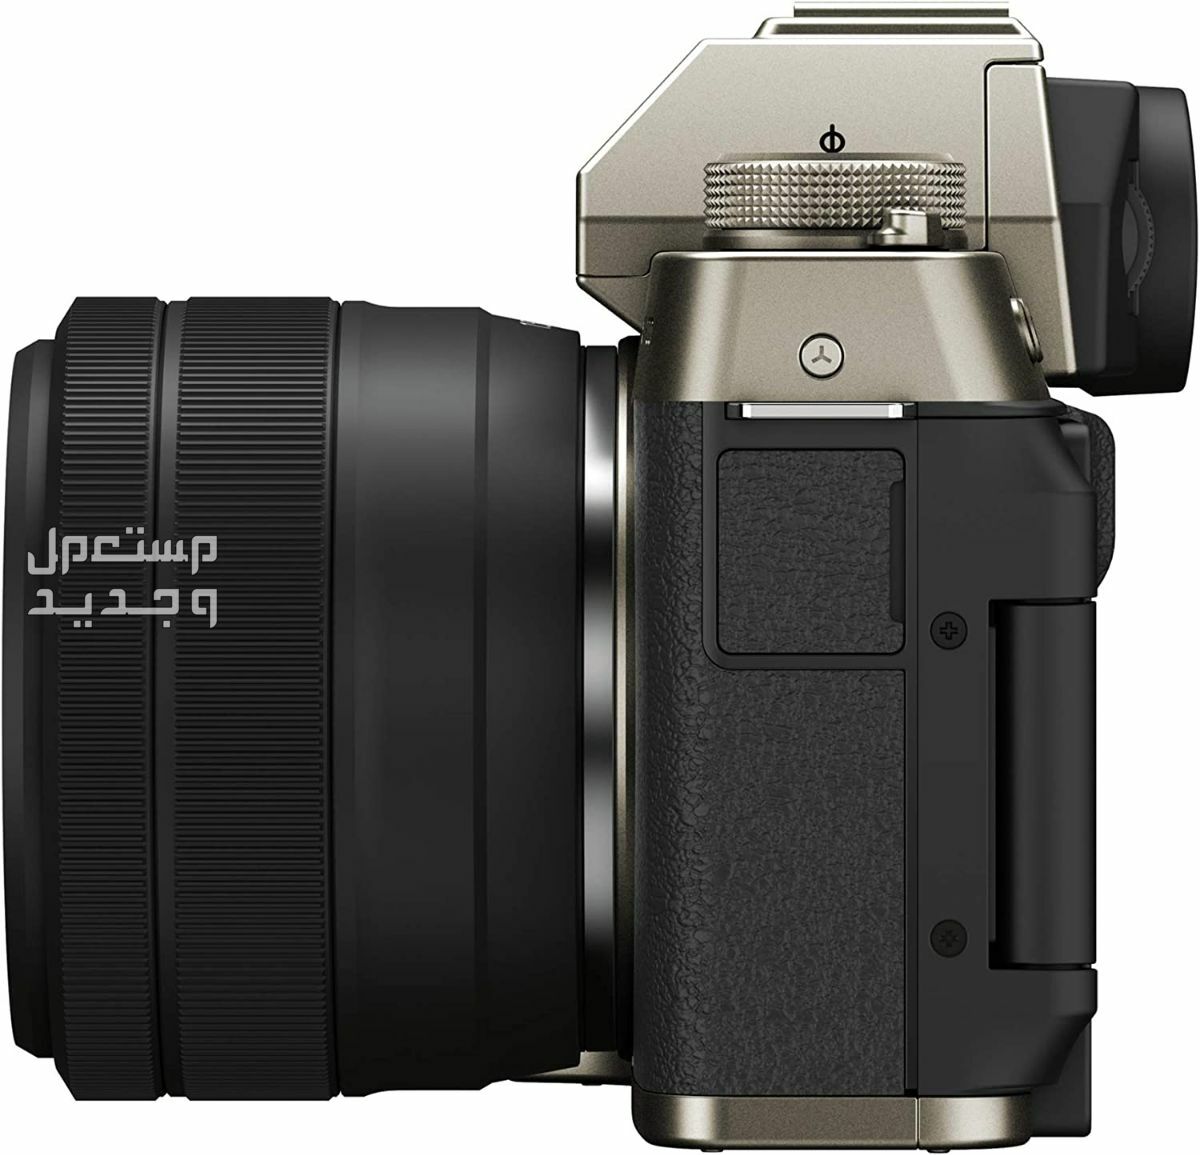 10 كاميرات تصوير ماركات عالمية بأسعار رخيصة في الجزائر سعر كاميرا Fujifilm X-T200